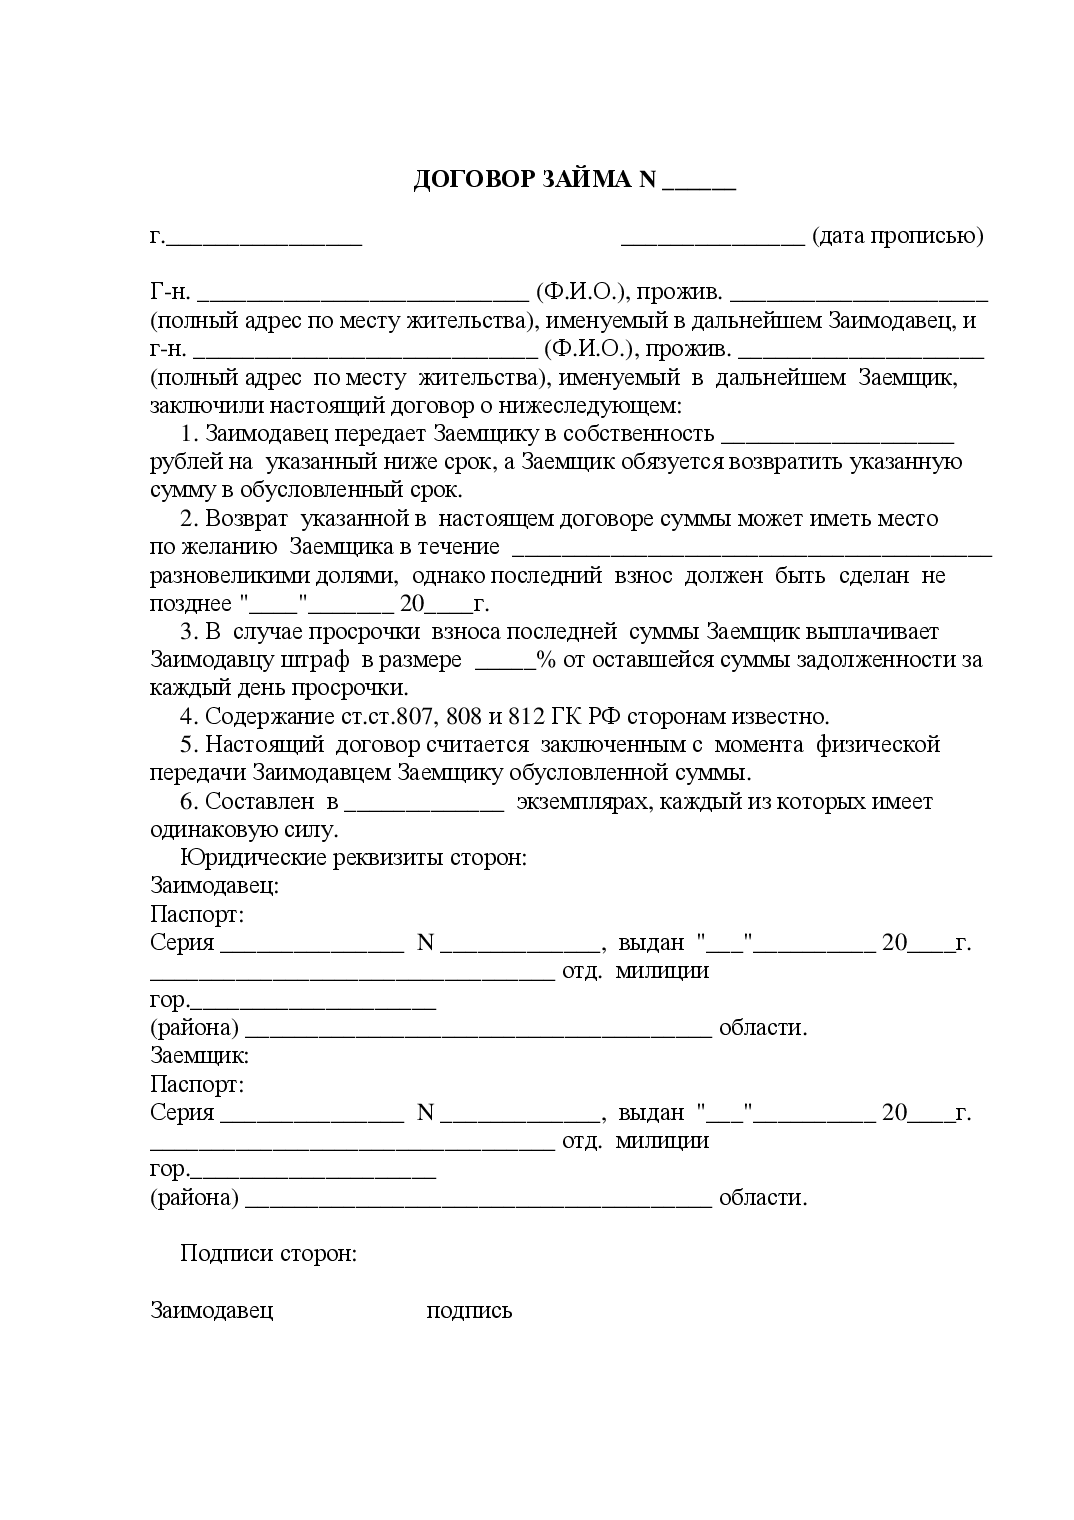 договор займа между физическими лицами образец 2020 finzas ru займ